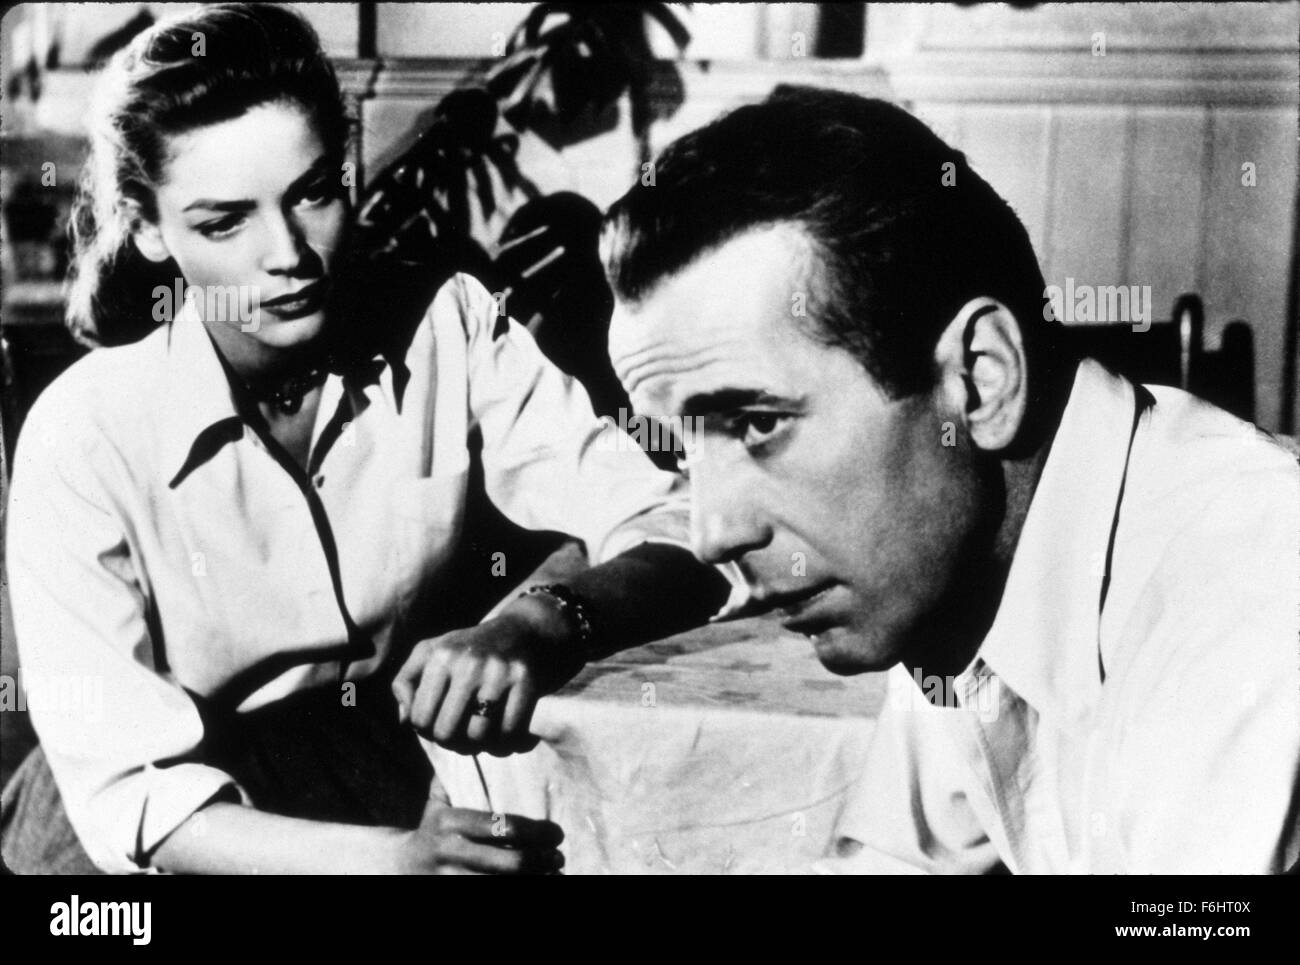 1948, le titre du film : KEY LARGO, Réalisateur : John Huston, Studio : WARNER, Photo : Lauren Bacall, Humphrey Bogart, Front plissé, FRONCEZ, préoccupé, réconfortant, inquiète, contrariée, se penchant en avant, voûté au-dessus. (Crédit Image : SNAP) Banque D'Images